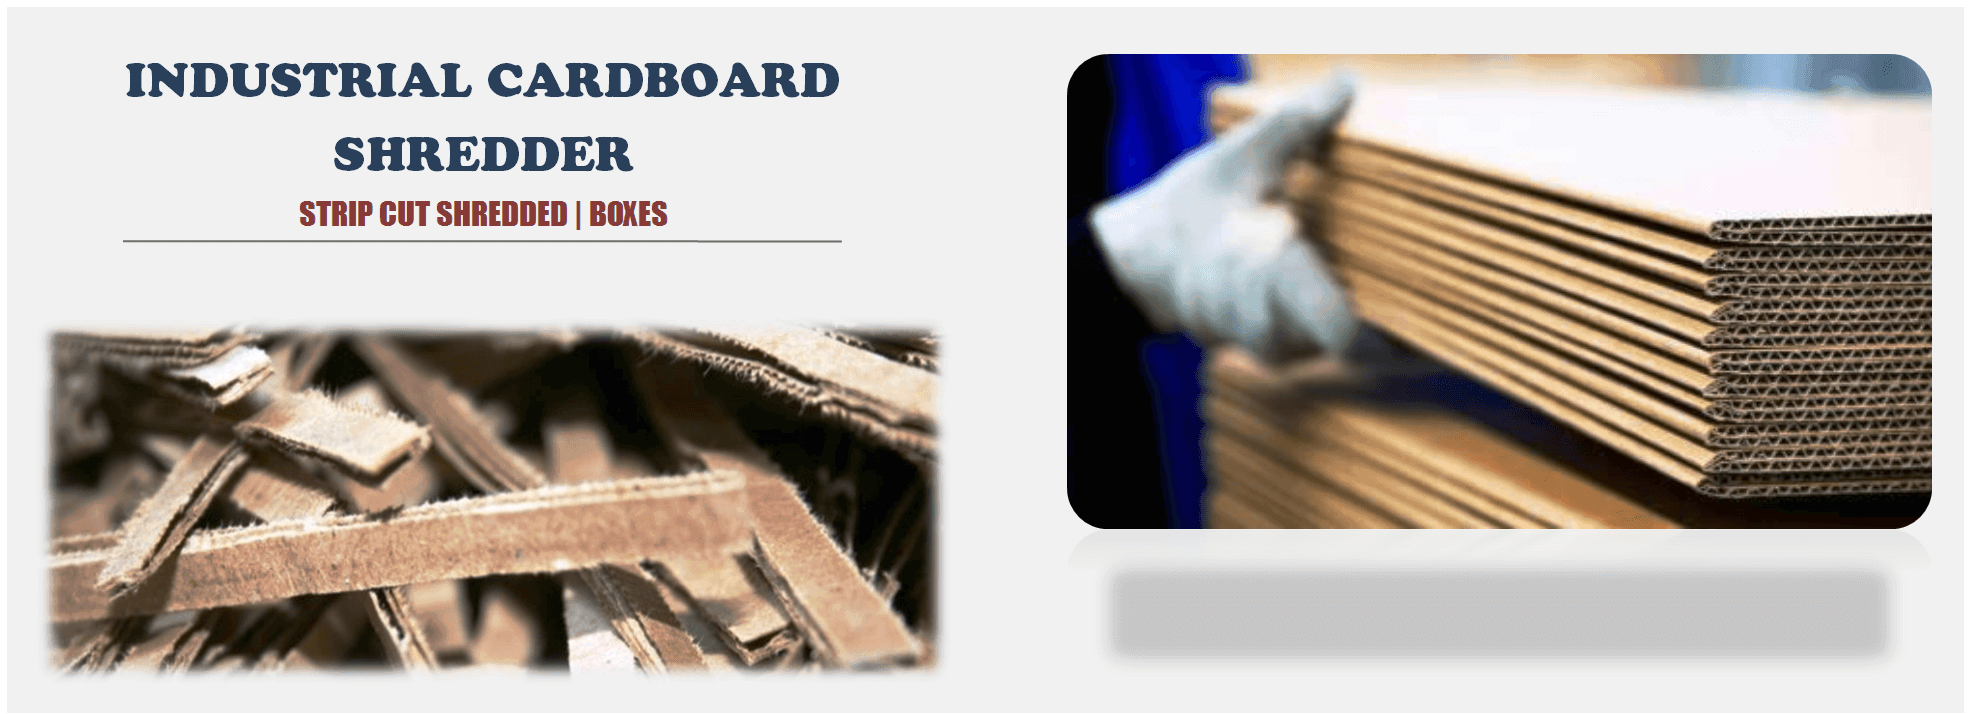 Industrial Cardboard Shredder